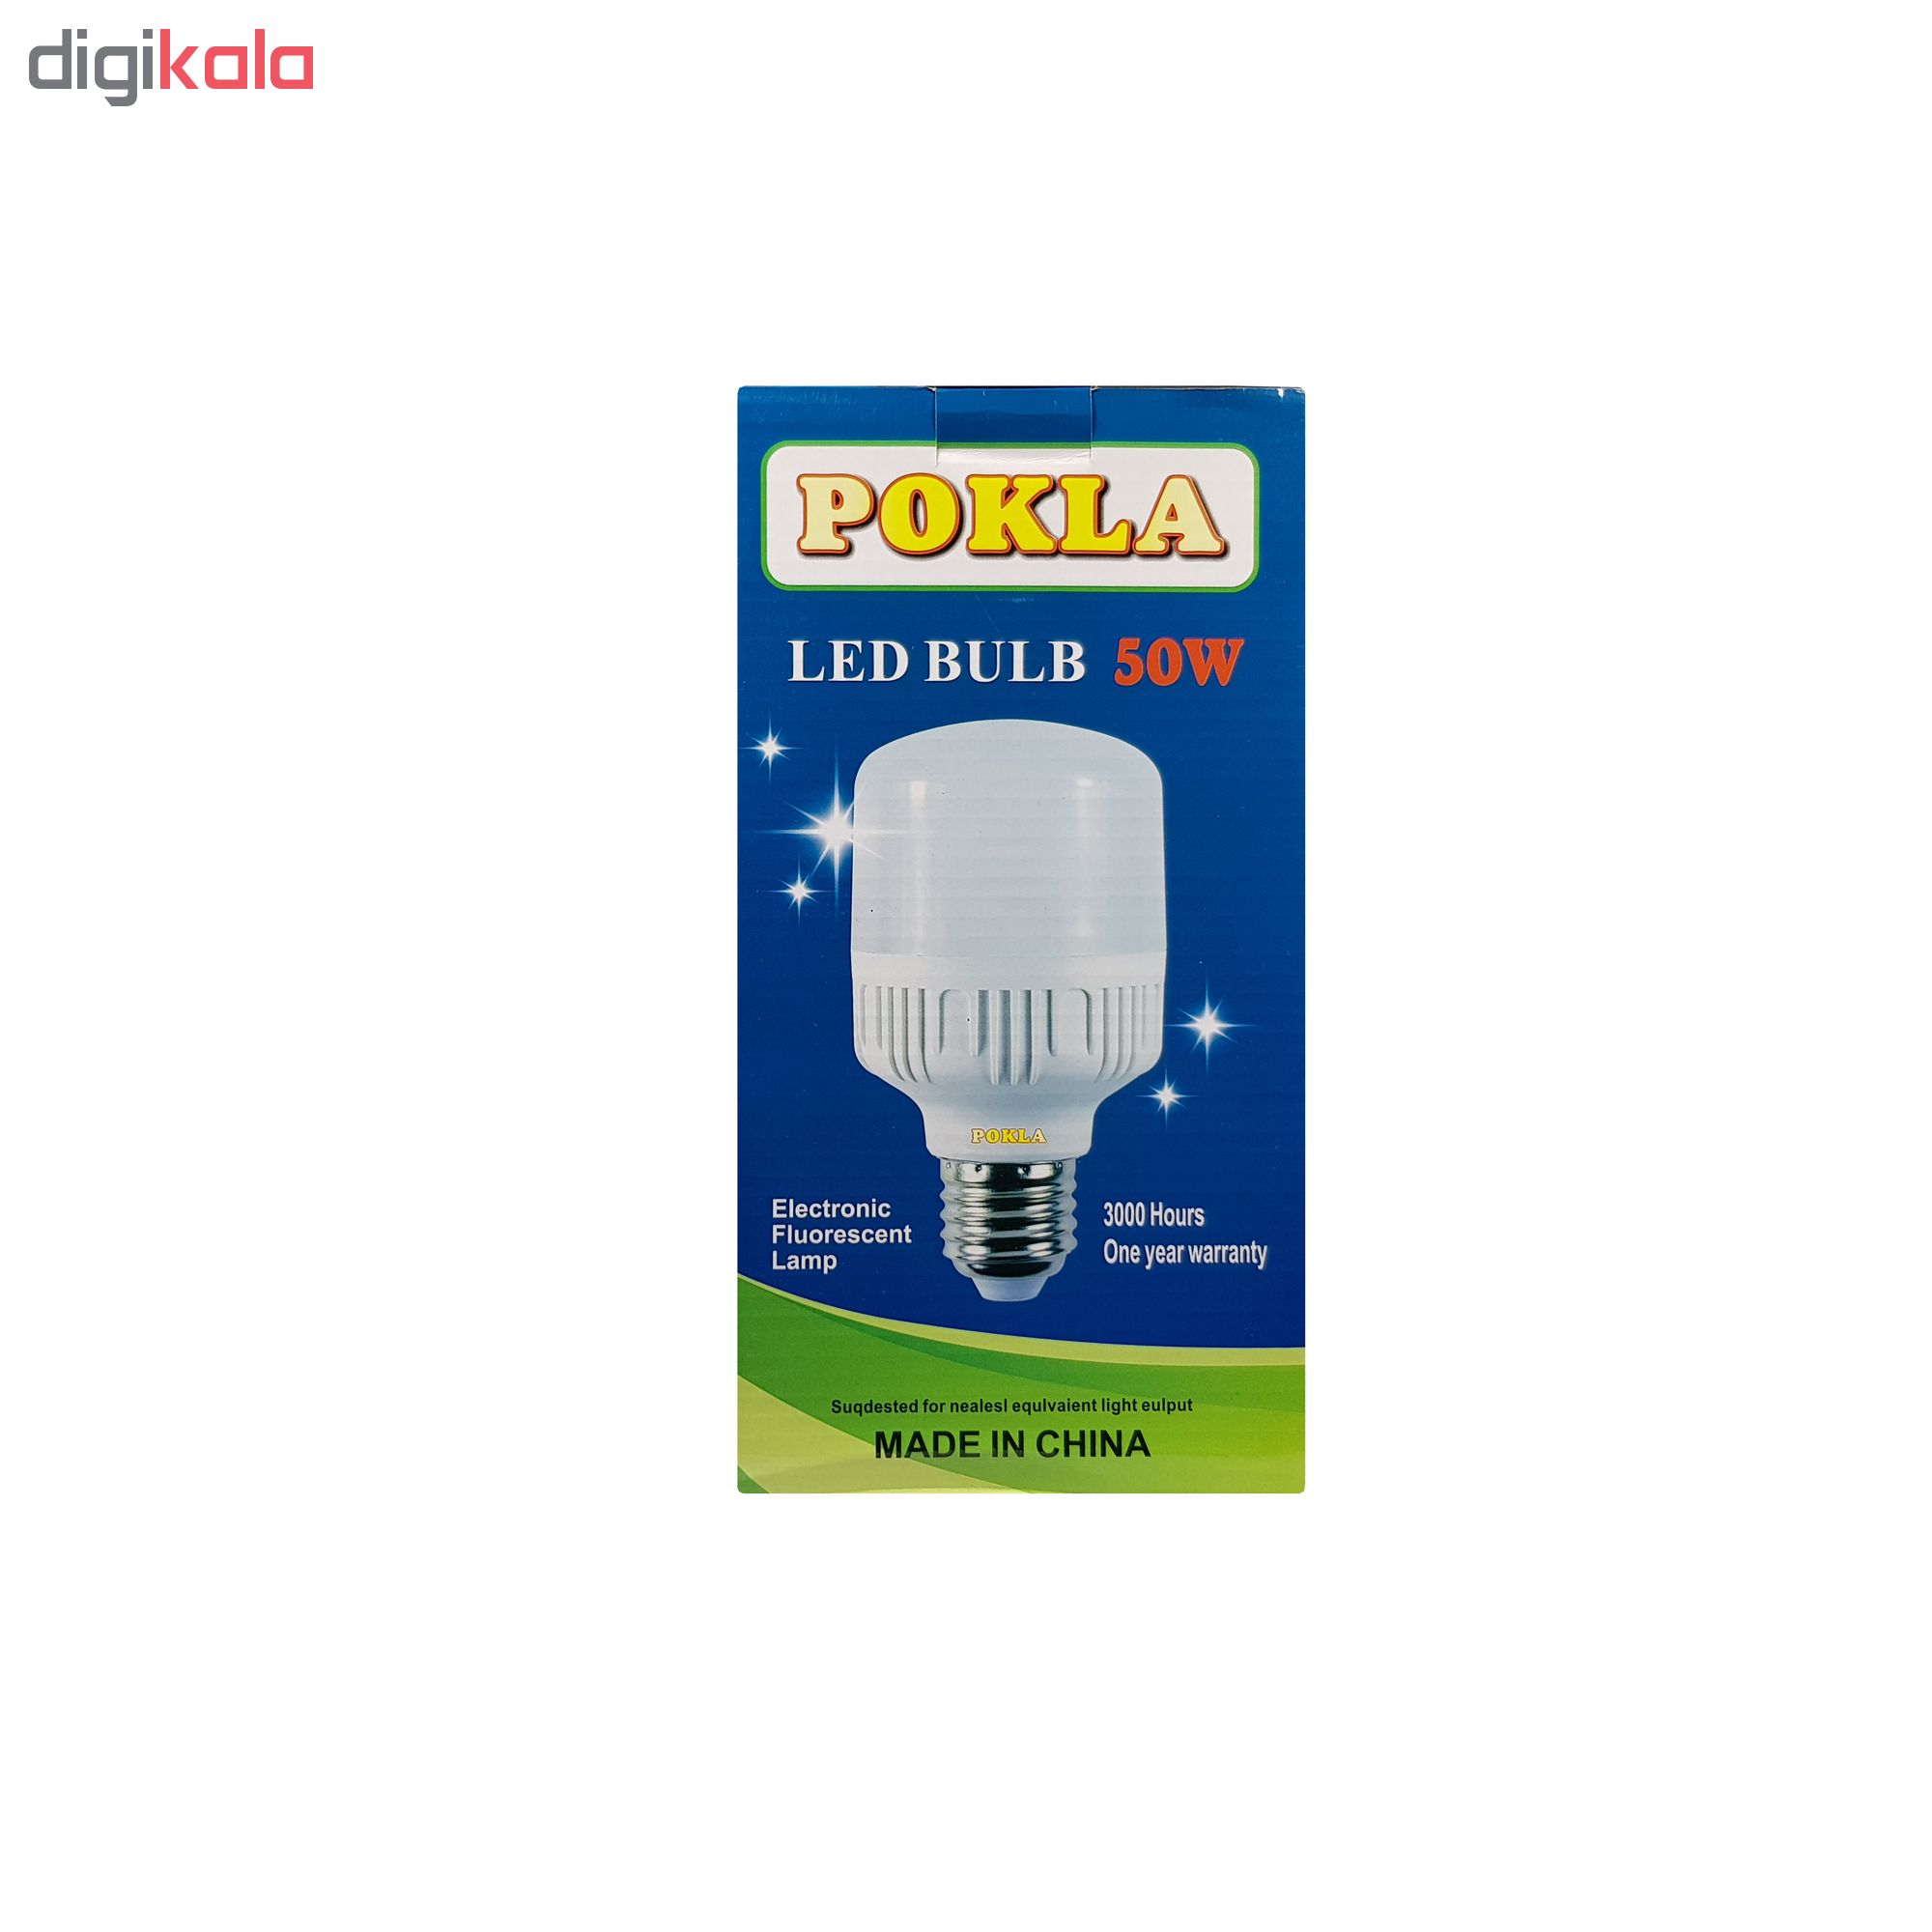 لامپ ال ای دی 50 وات پوکلا کد SH_5005 